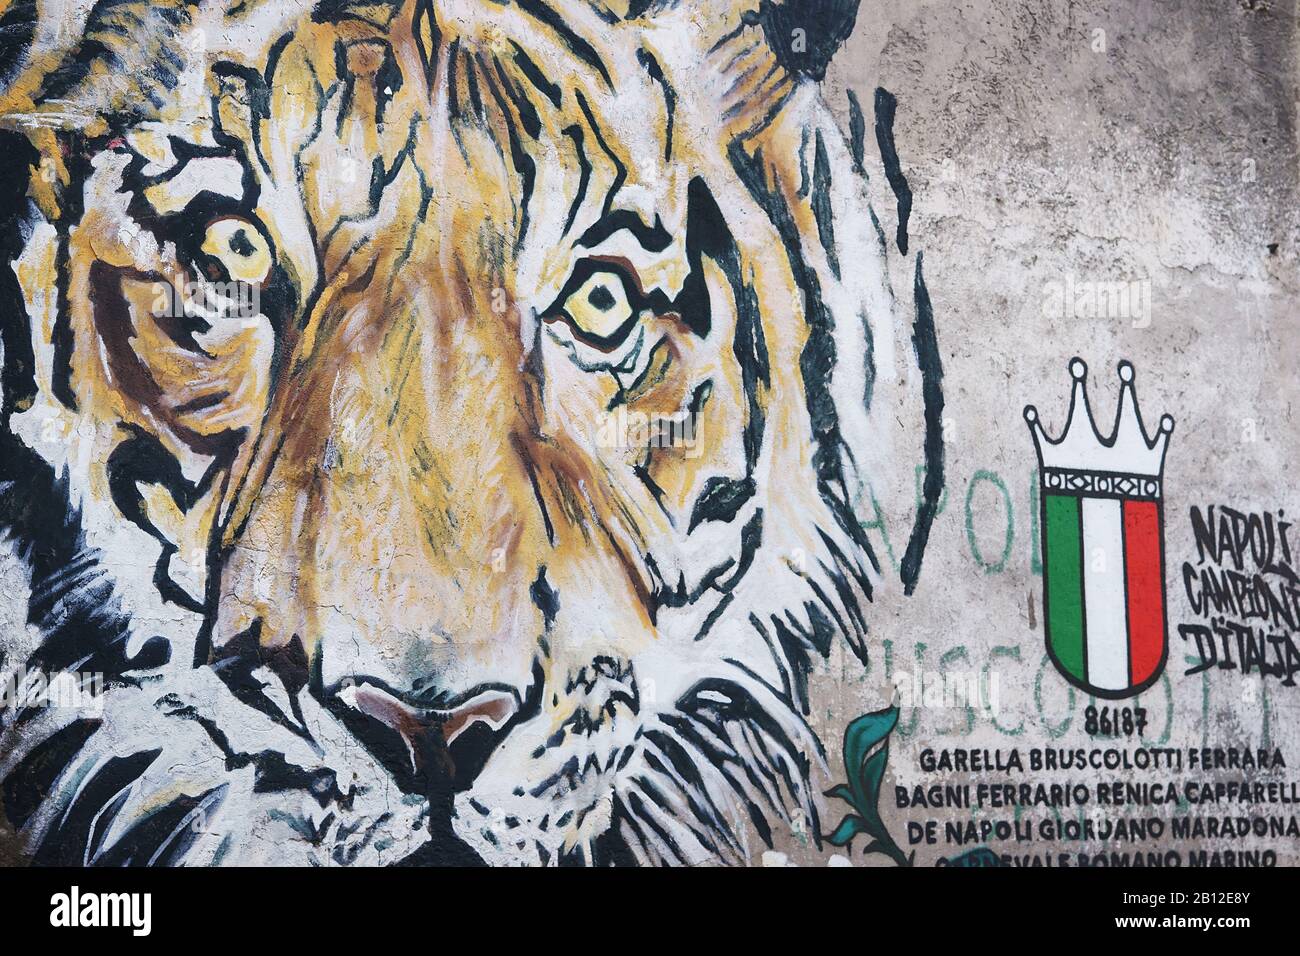 1986-87 la squadra di calcio Napoli ha vinto il primo campionato - Murale nel quartiere Rione Sanita, Napoli Italia Europa Foto Stock